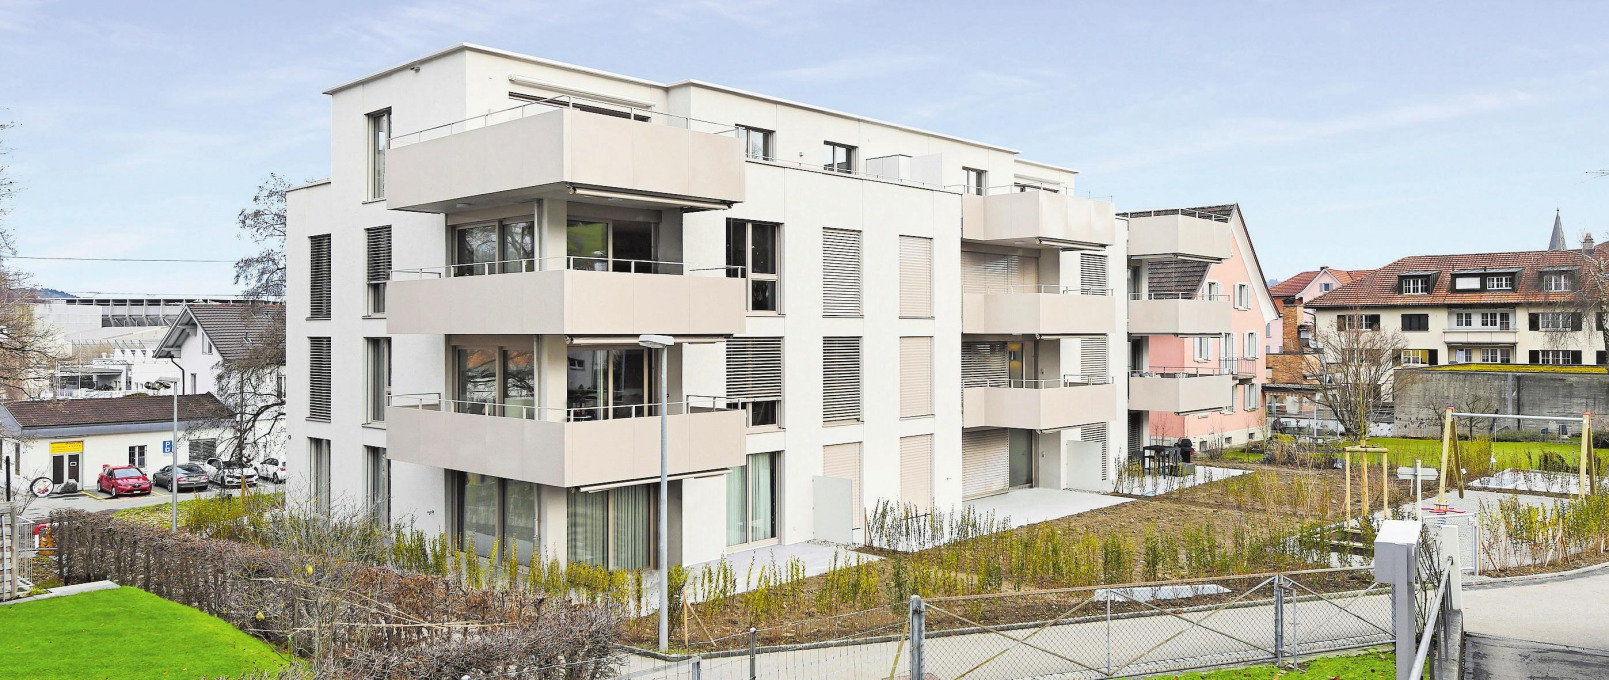 Attraktive Wohnräume: Loop-Eigentumswohnungen in St. Gallen